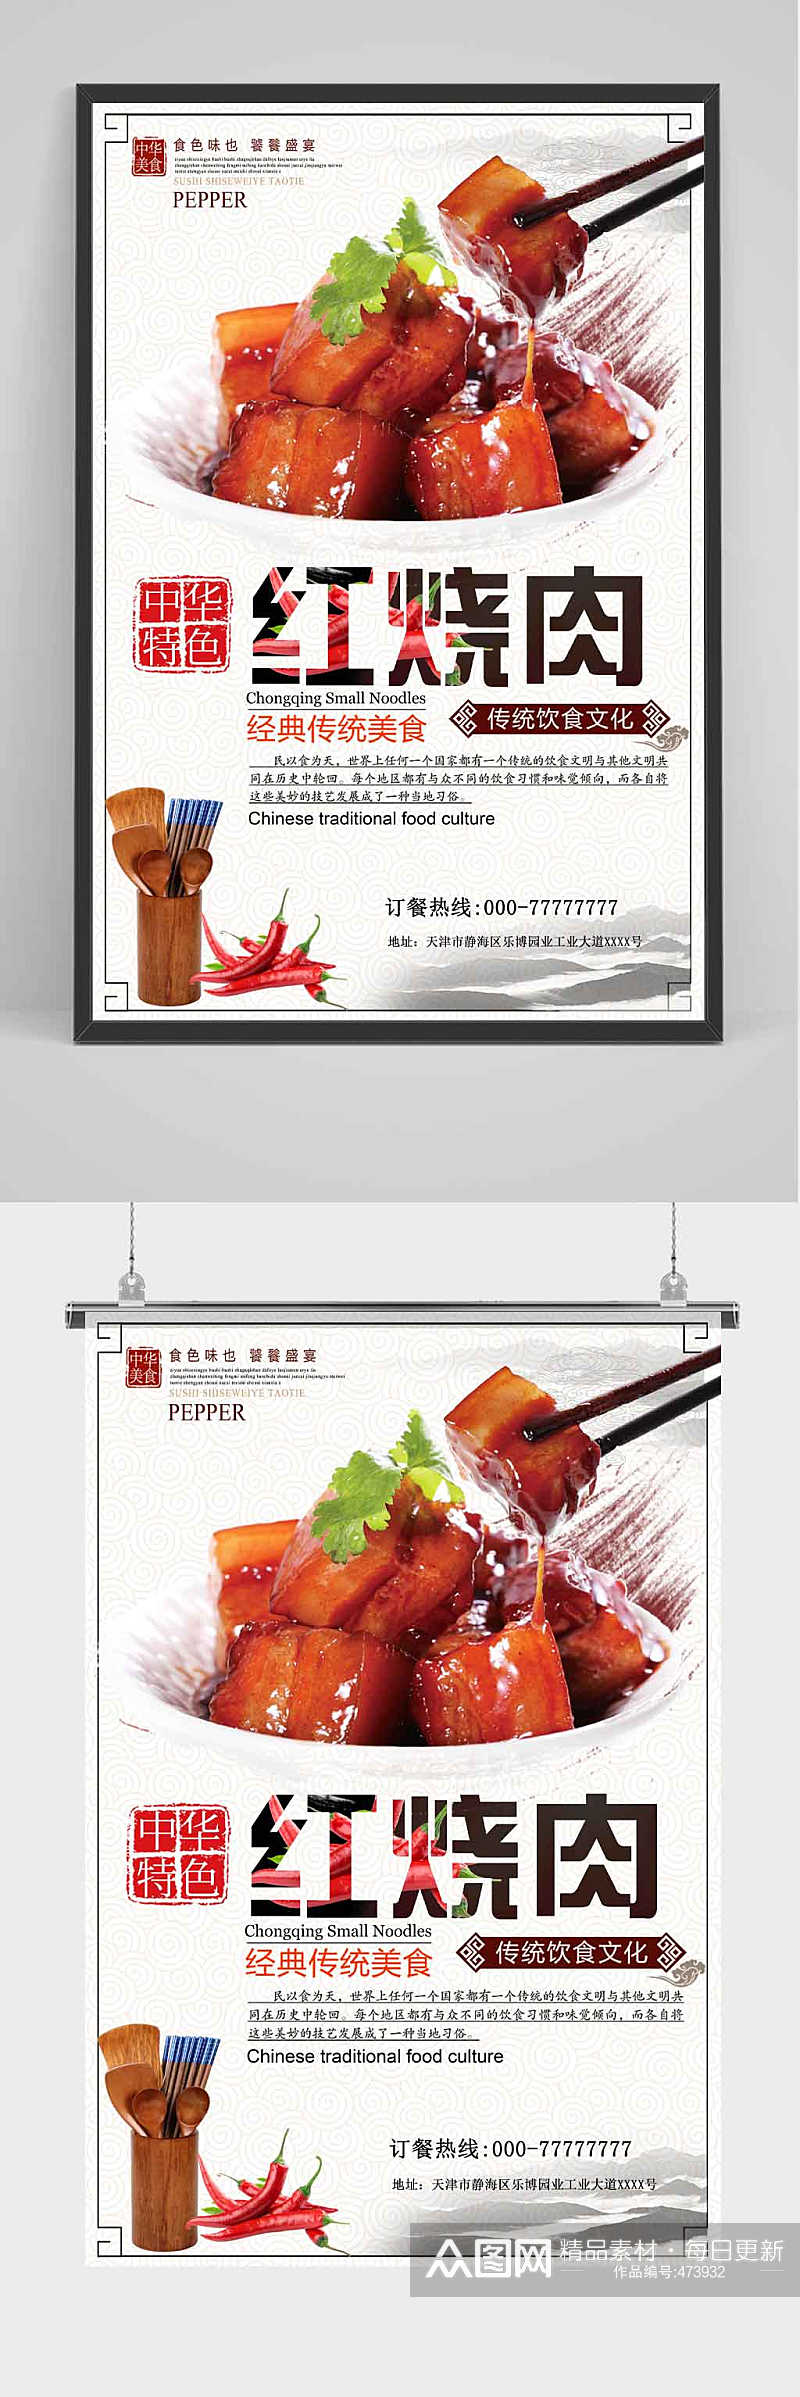 经典美食红烧肉海报设计素材